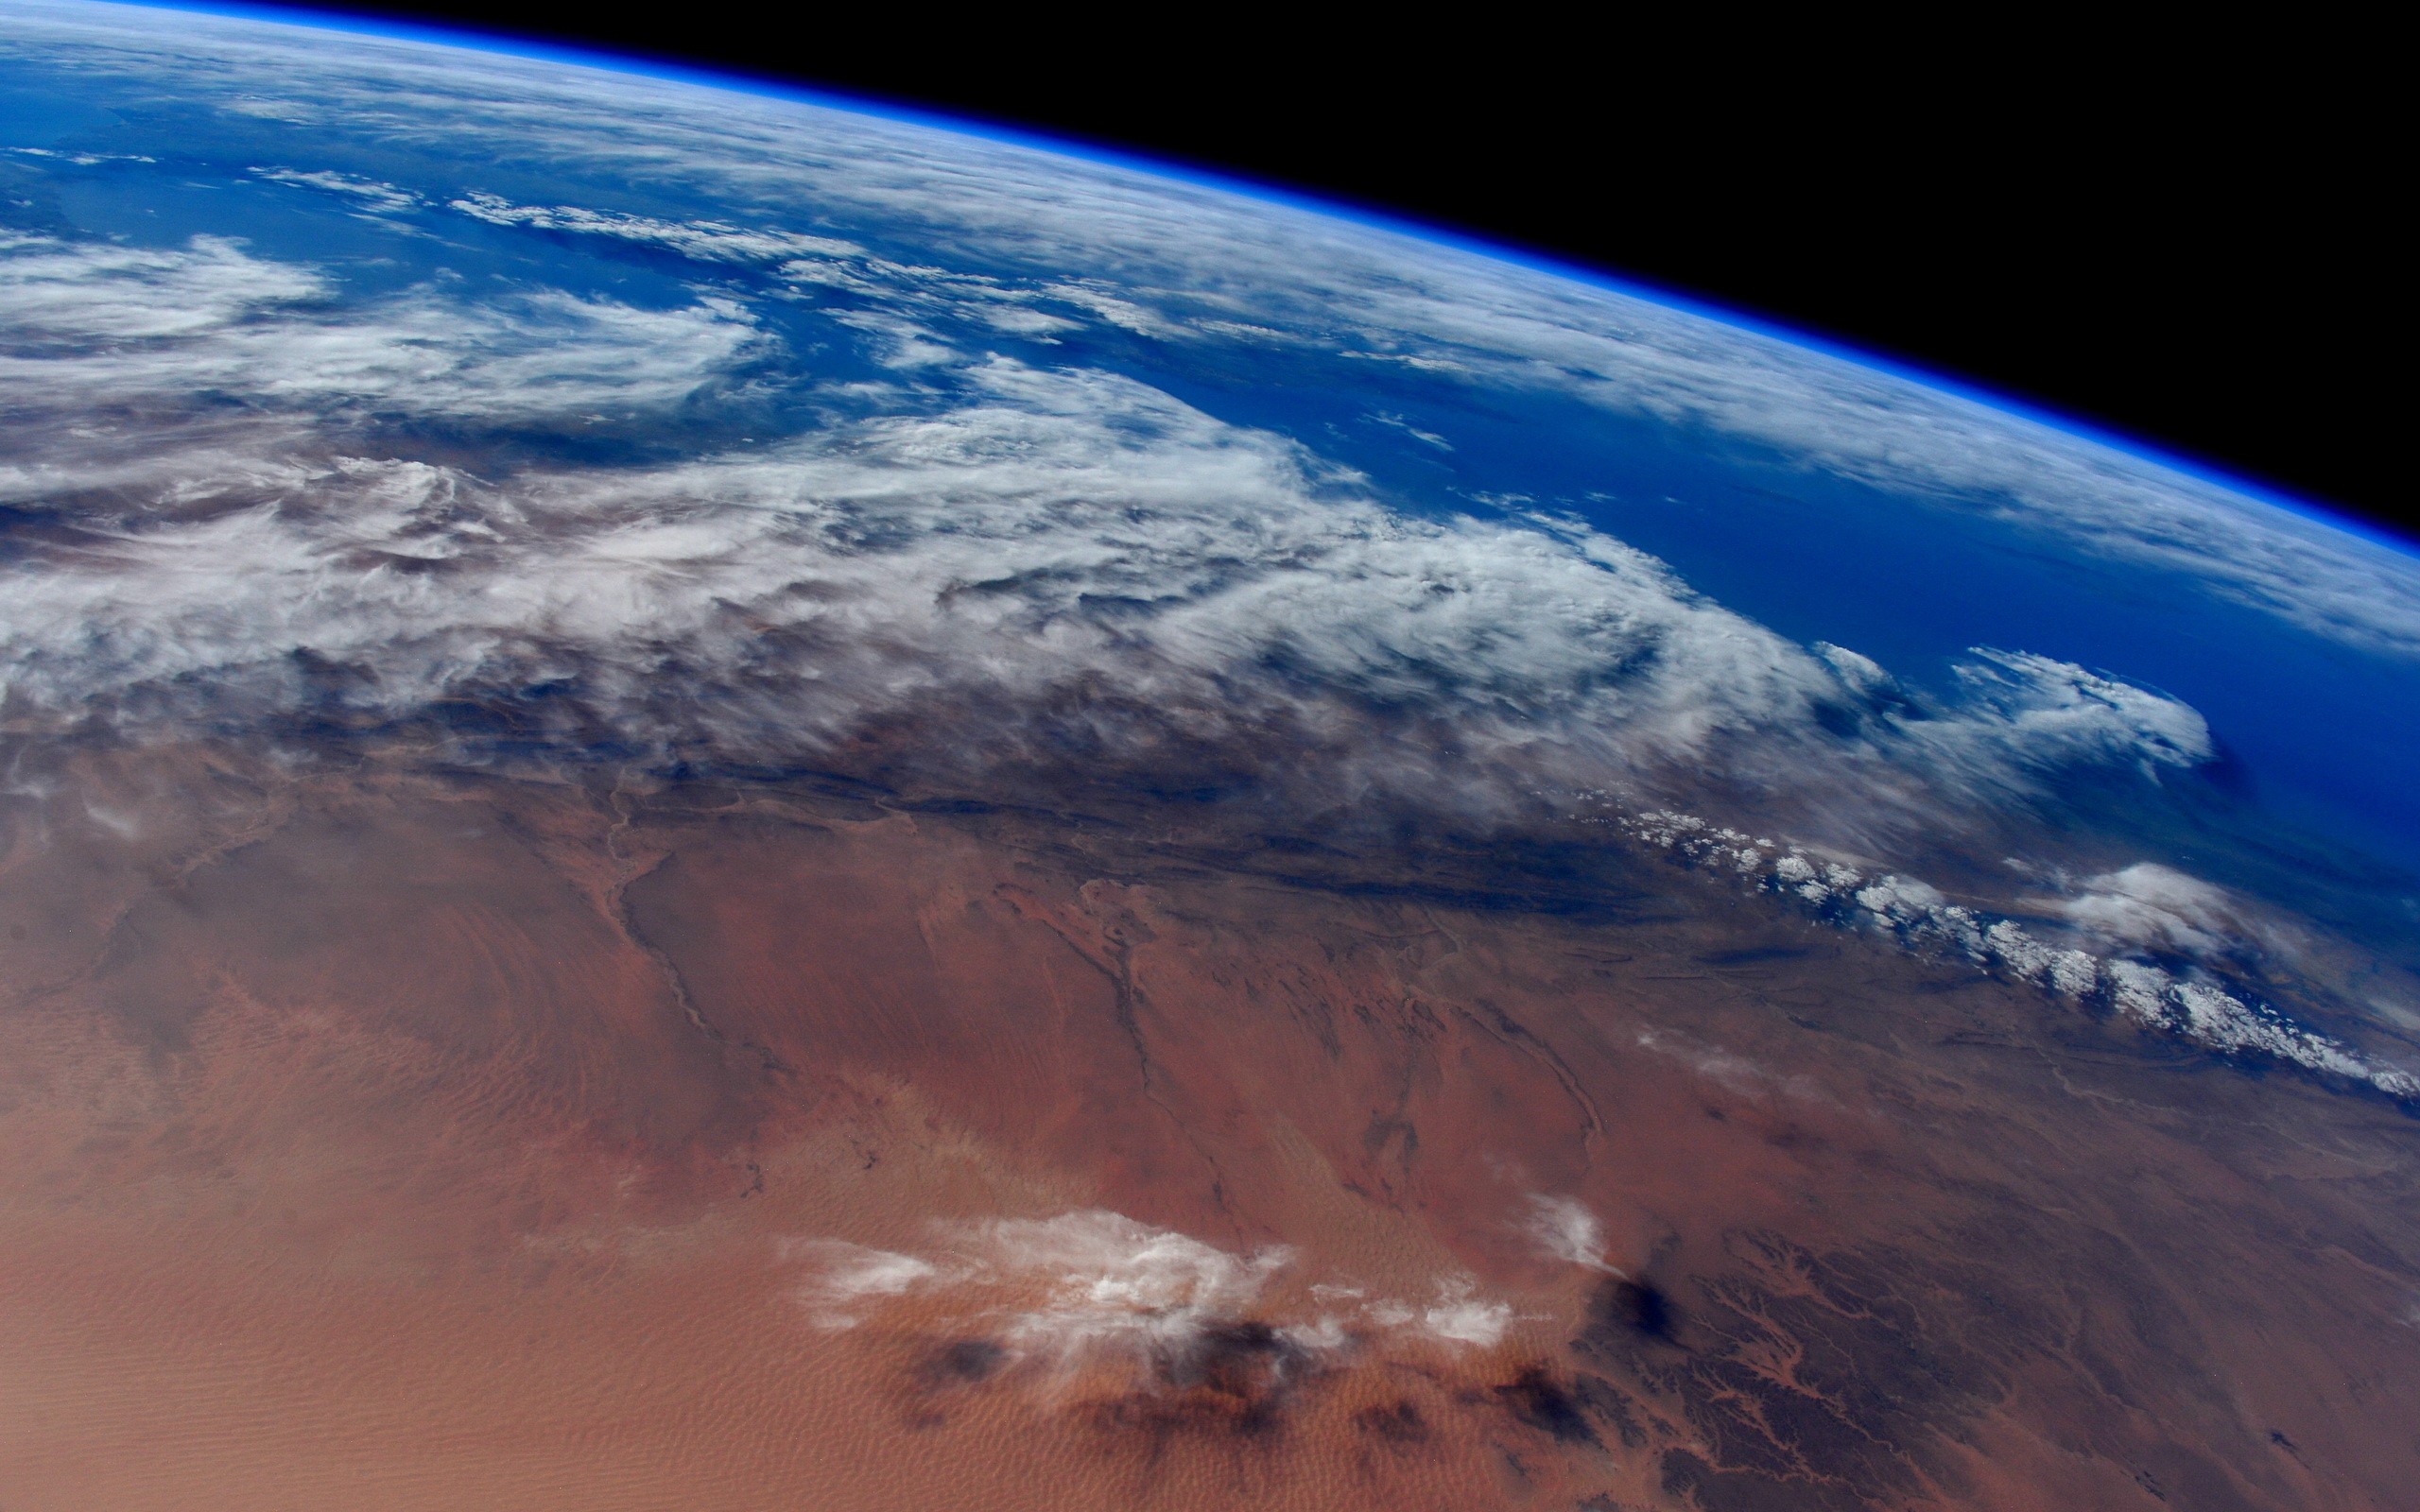 General 2560x1600 space Earth orbital view desert atmosphere planet